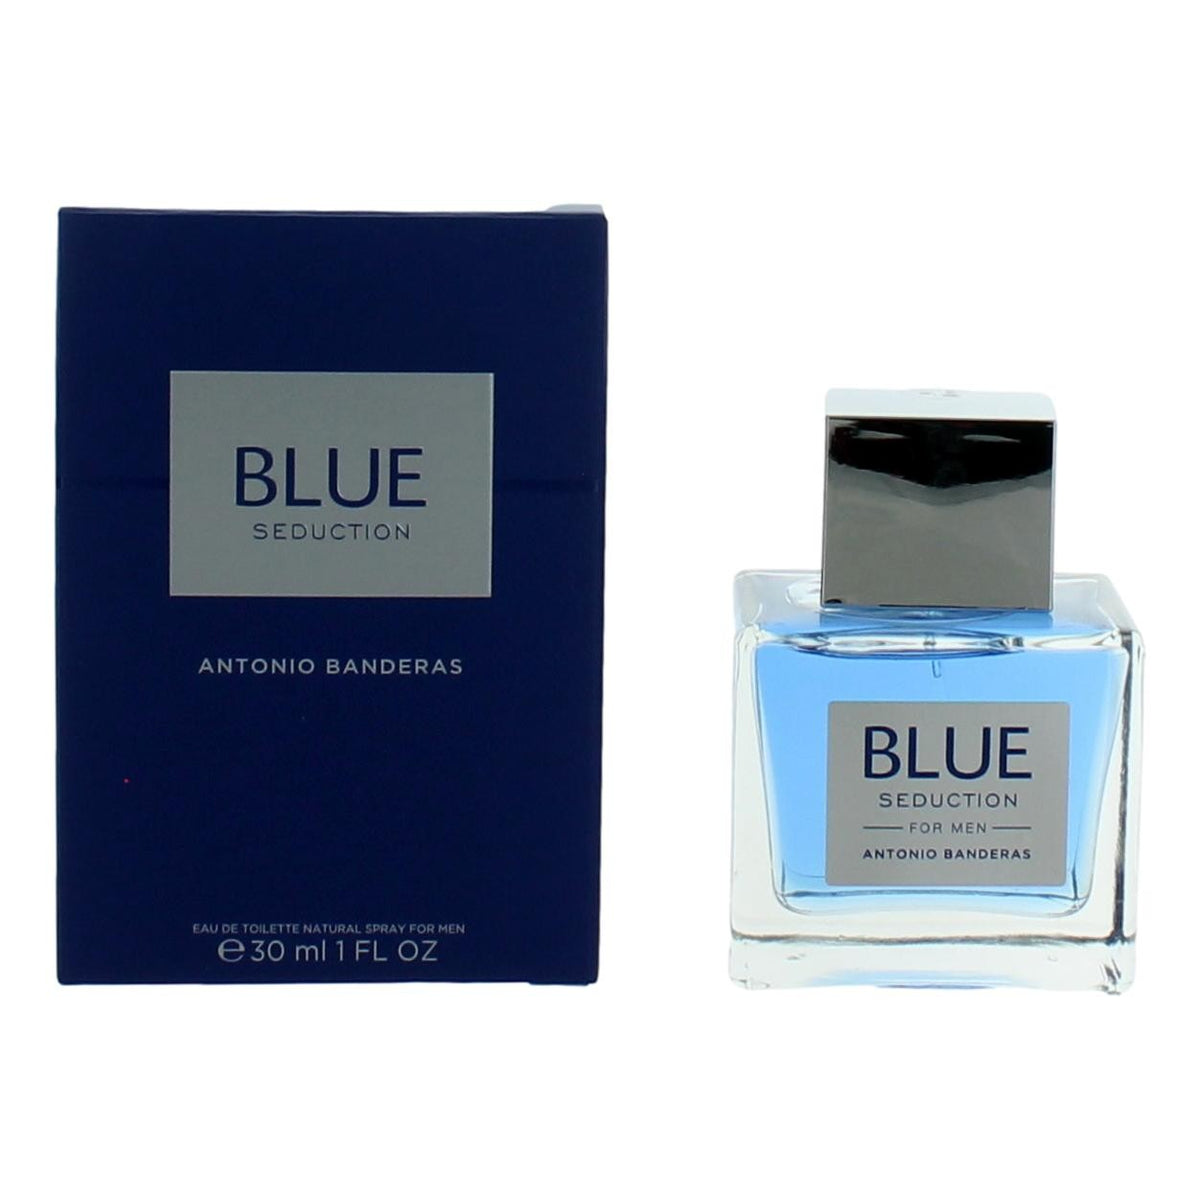 Blue Seduction by Antonio Banderas, 1 oz Eau De Toilette Spray for Men